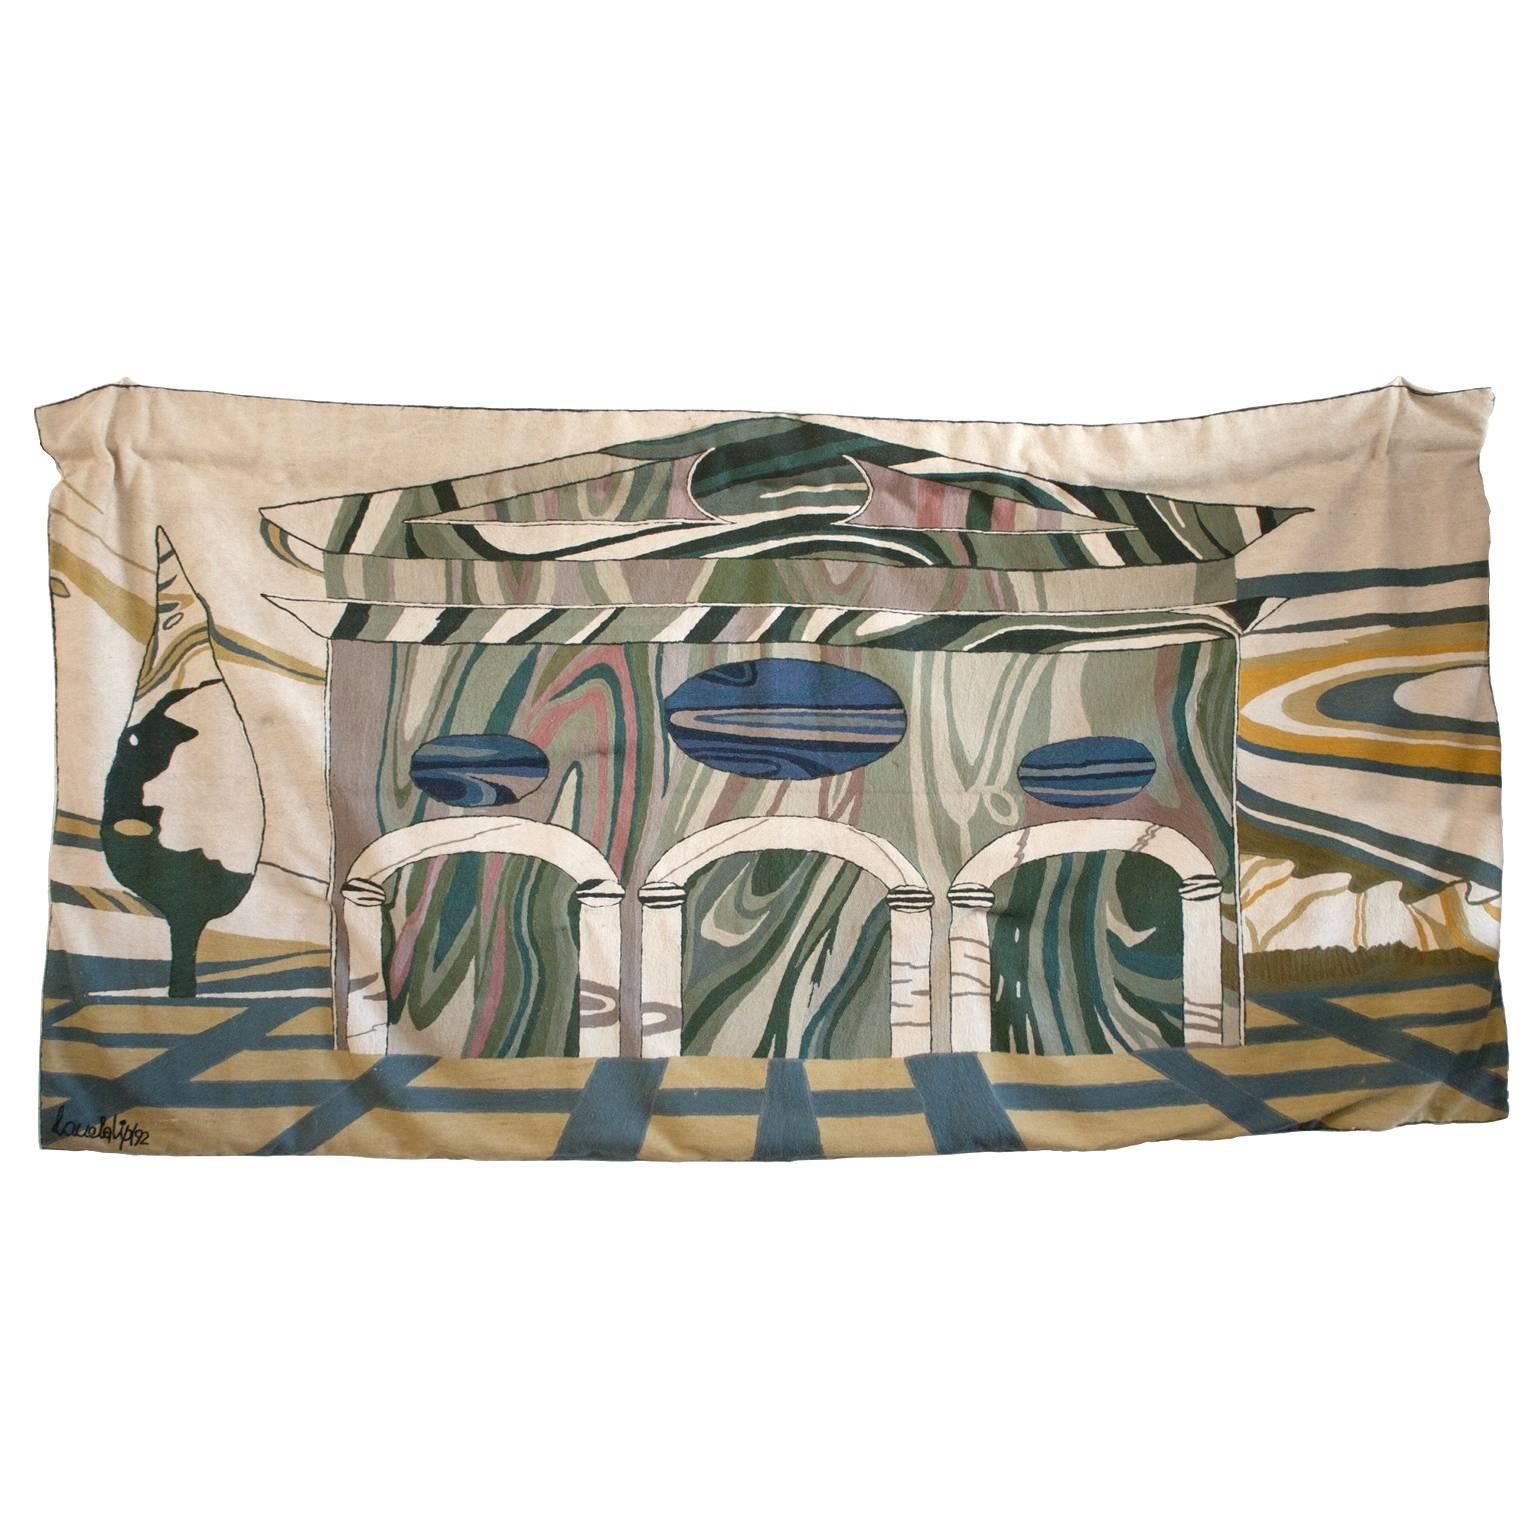 Nanda Vigo, Tapestry